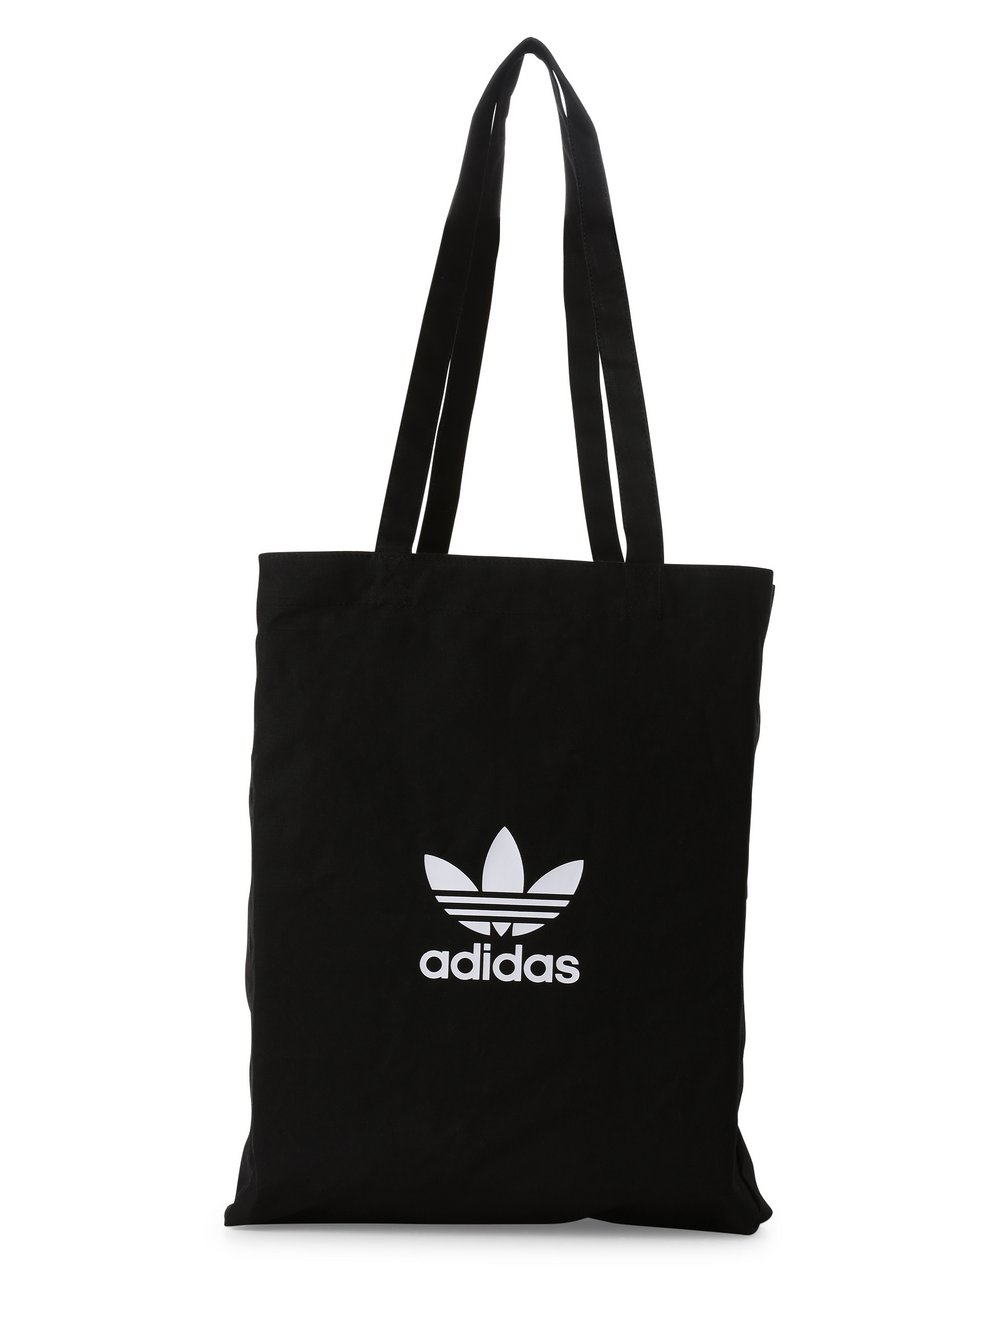 Adidas Originals - torba męska, czarny